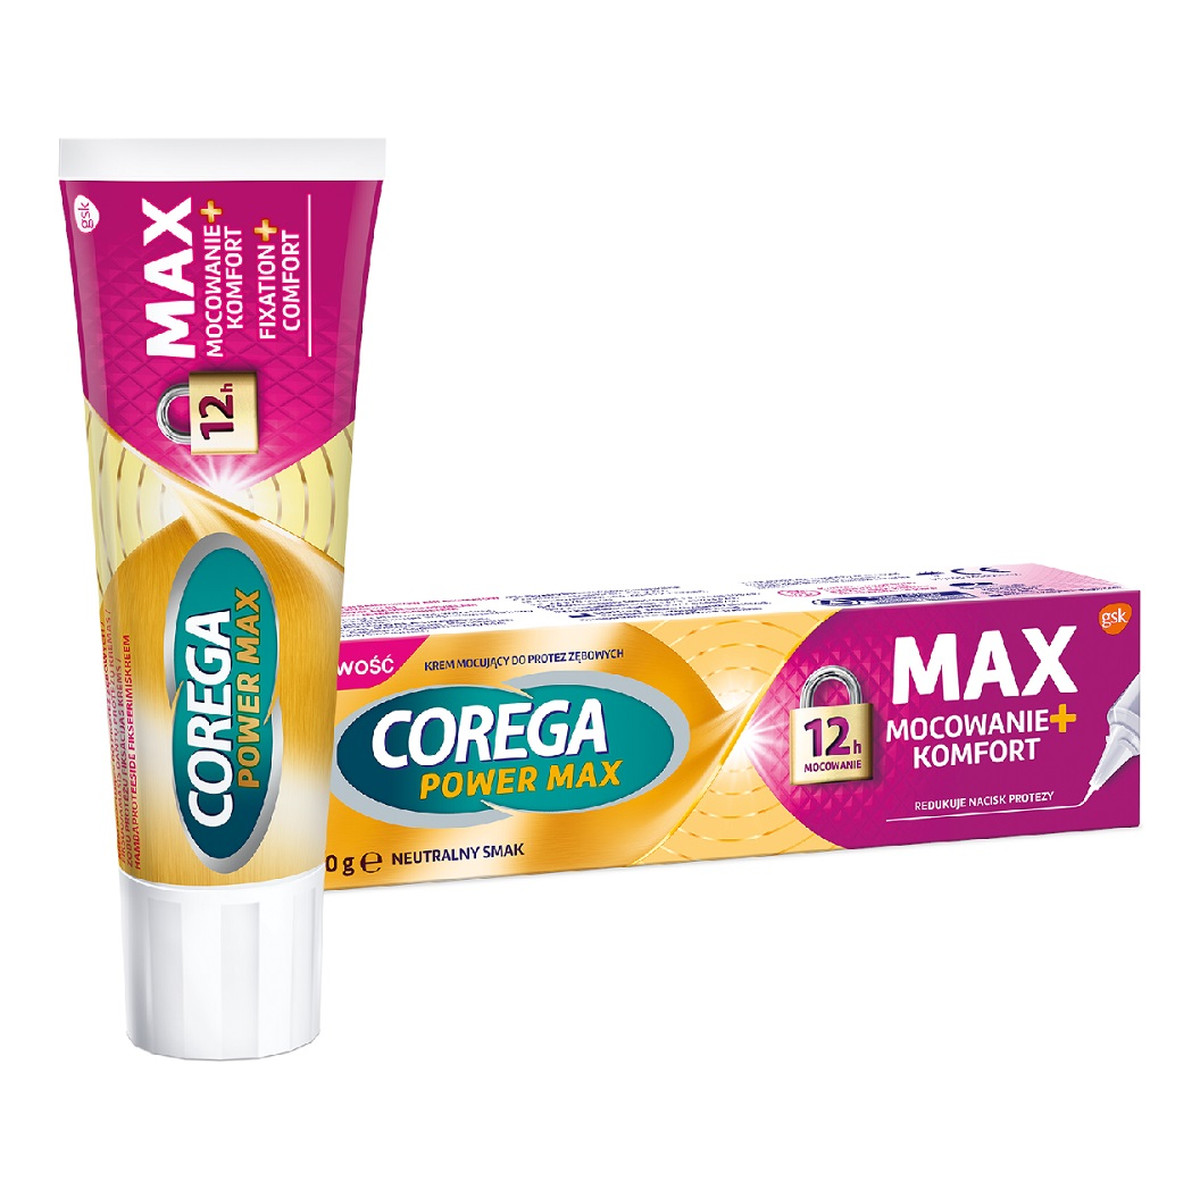 Corega Power Max Mocowanie + Komfort Krem mocujący do protez zębowych o neutralnym smaku 40g 40g